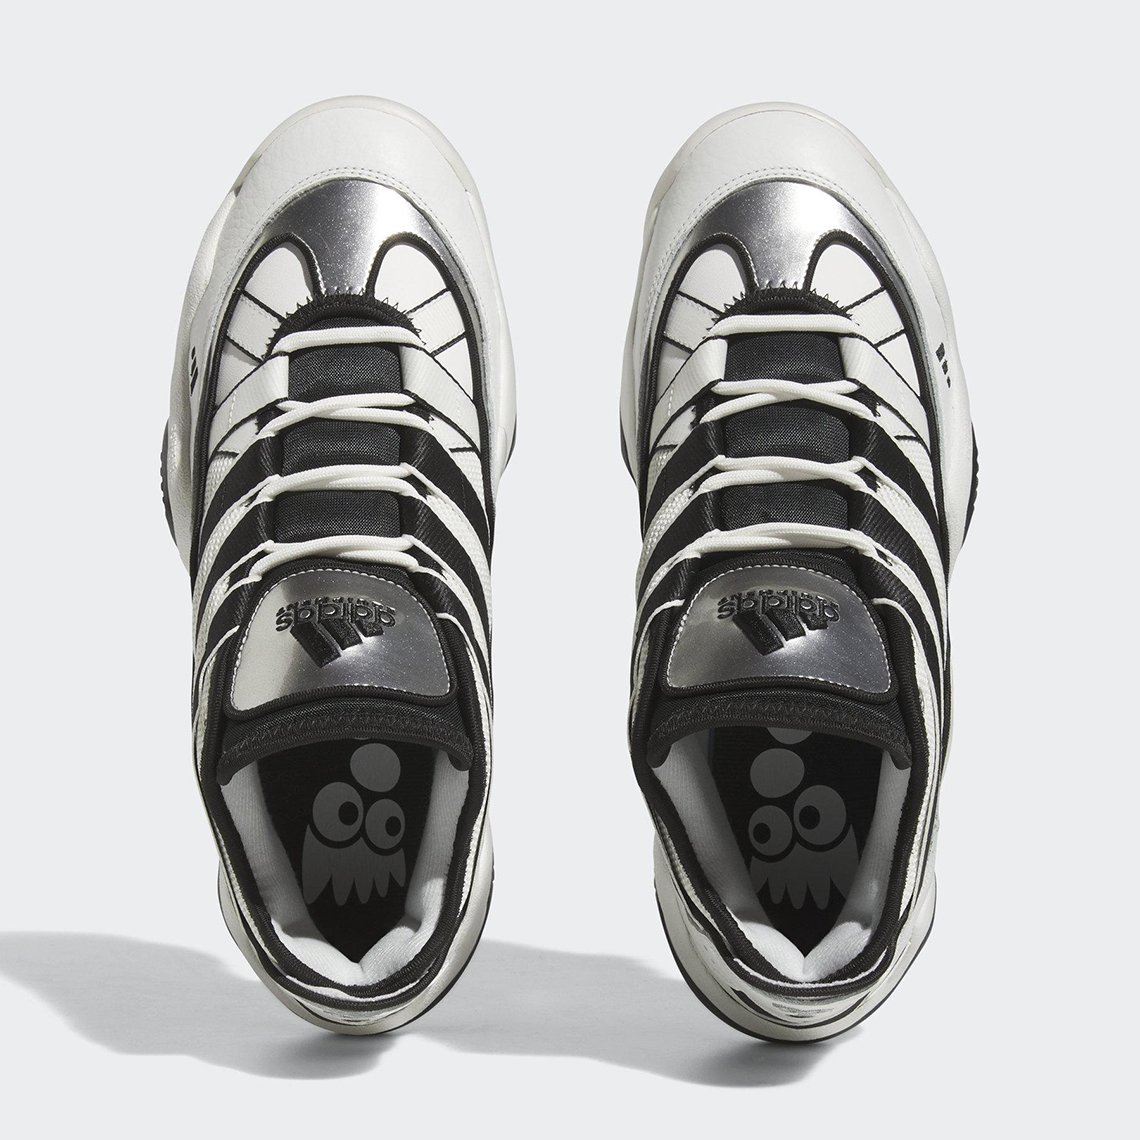 adidas schemes Top Ten 2010 White Black Silver Hr0099 1